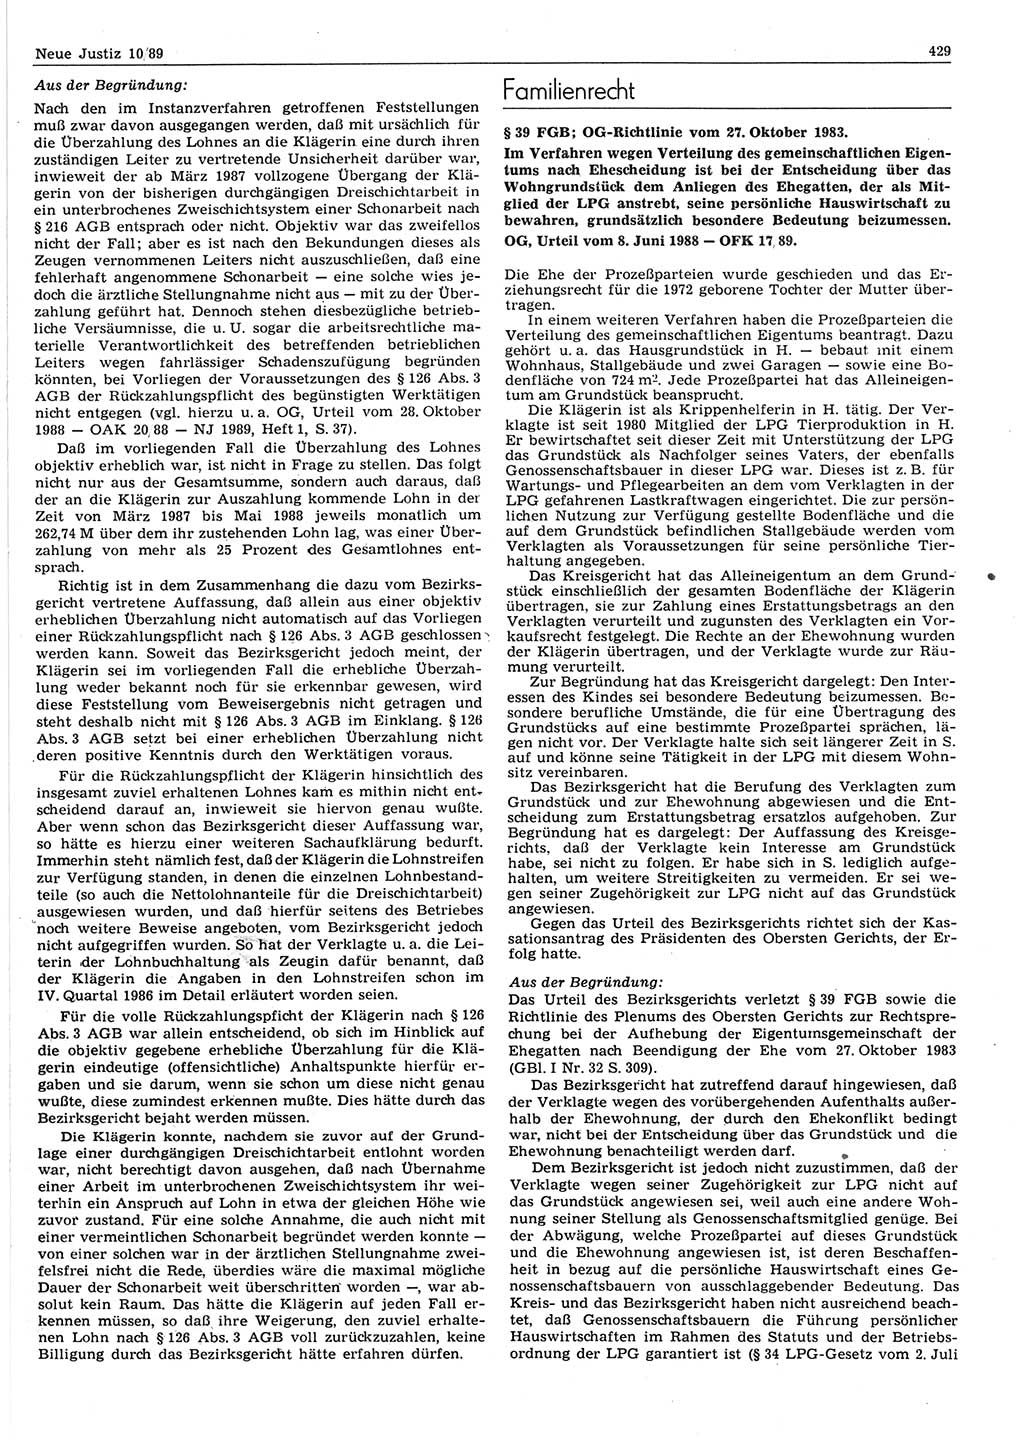 Neue Justiz (NJ), Zeitschrift für sozialistisches Recht und Gesetzlichkeit [Deutsche Demokratische Republik (DDR)], 43. Jahrgang 1989, Seite 429 (NJ DDR 1989, S. 429)